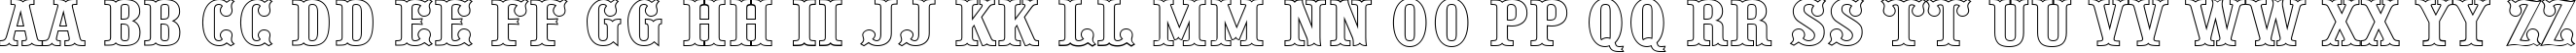 Пример написания английского алфавита шрифтом a_PresentumOtl